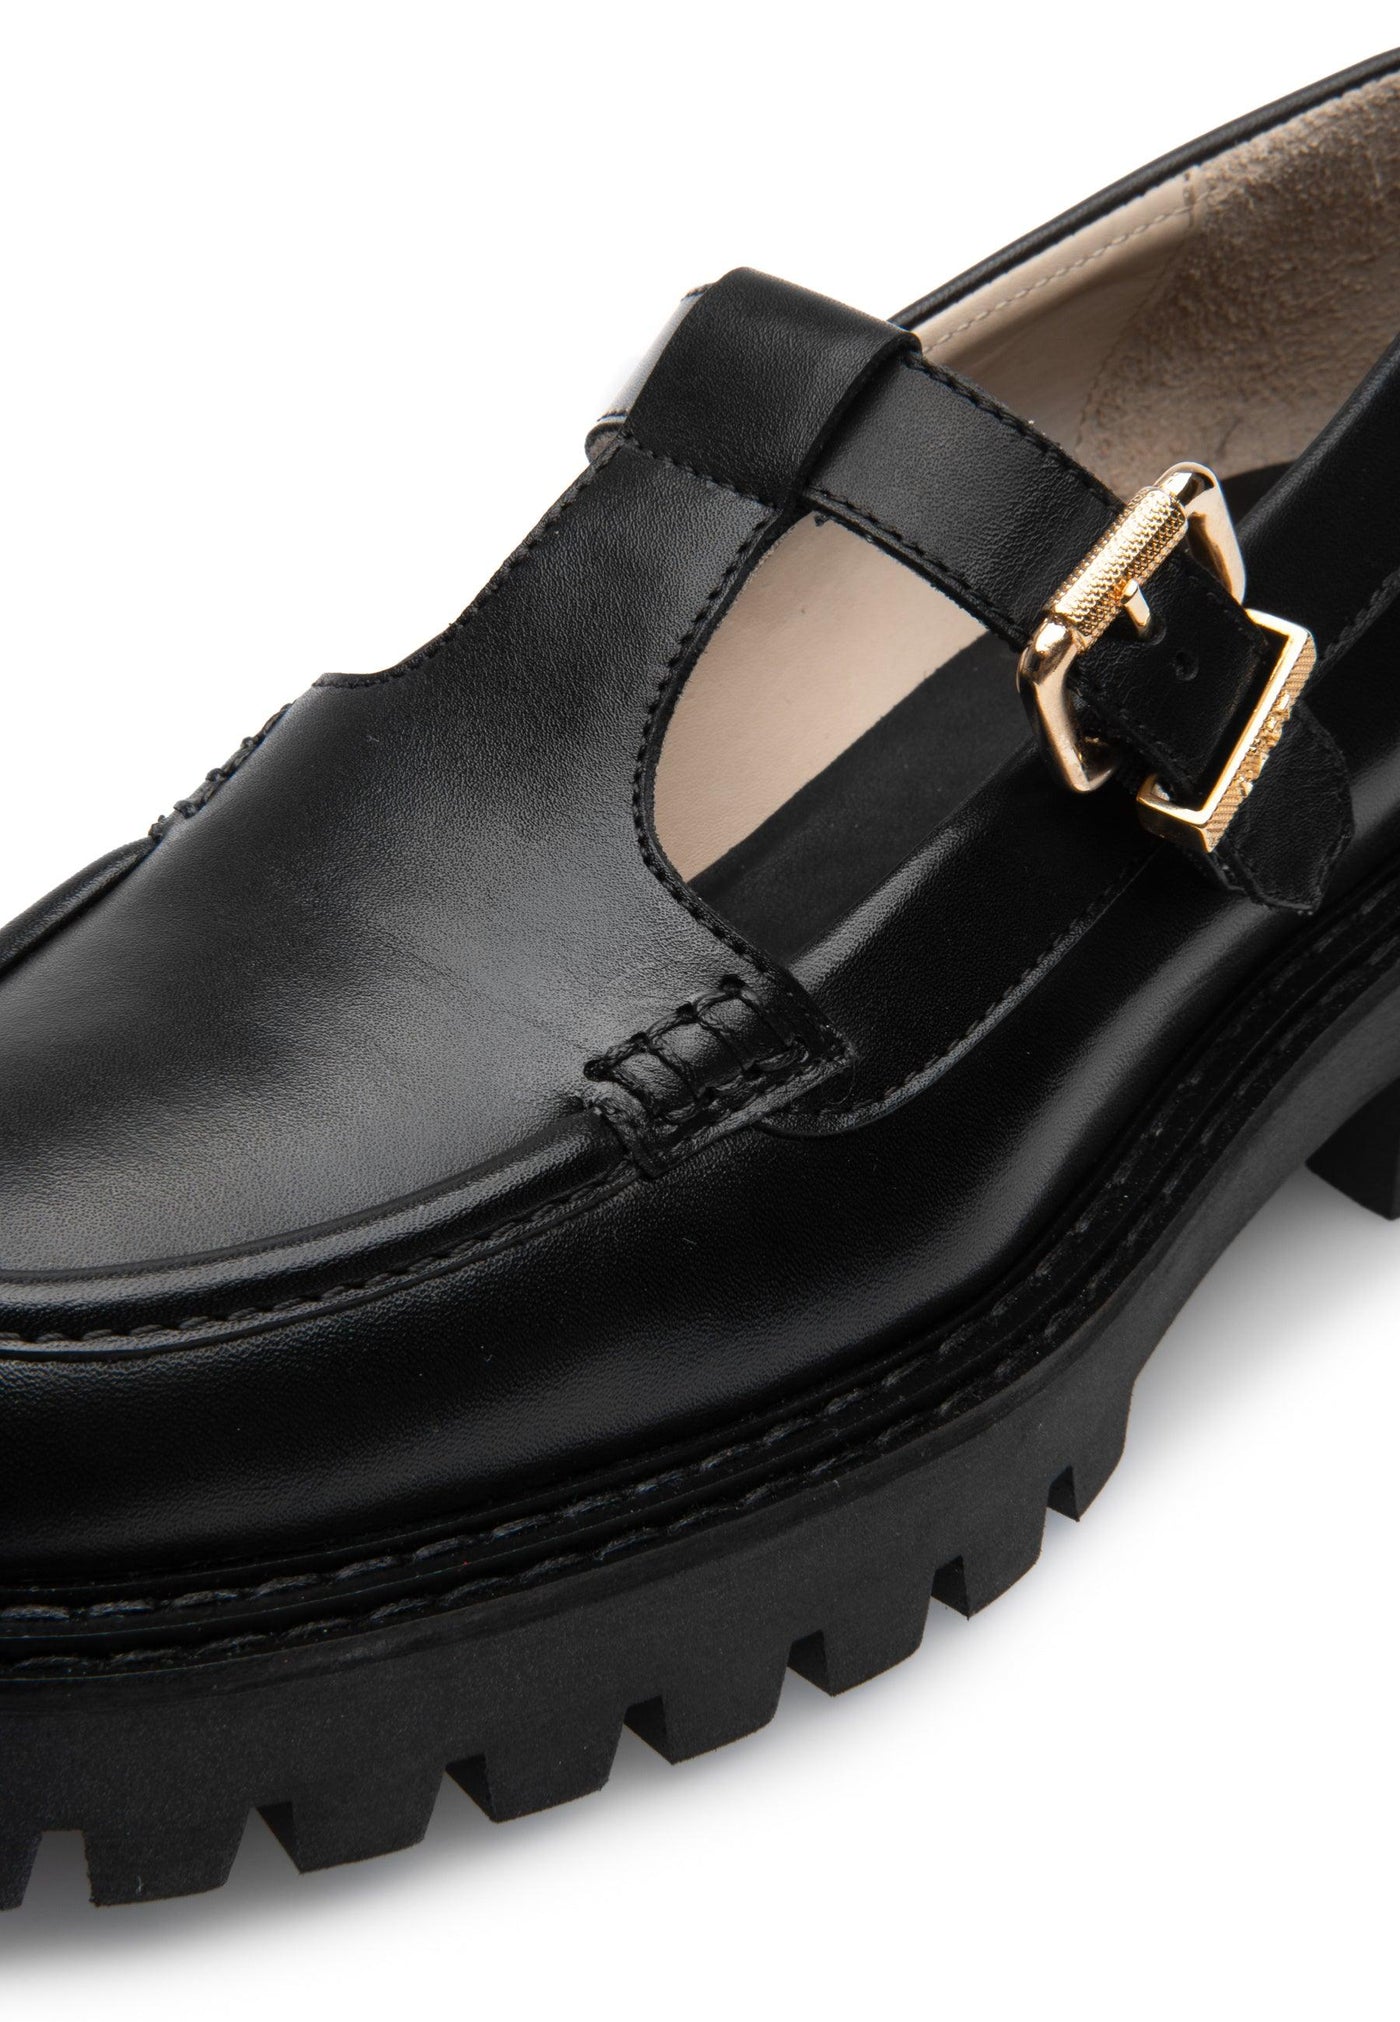 LÄST Coco - Leather - Black Shoes Black